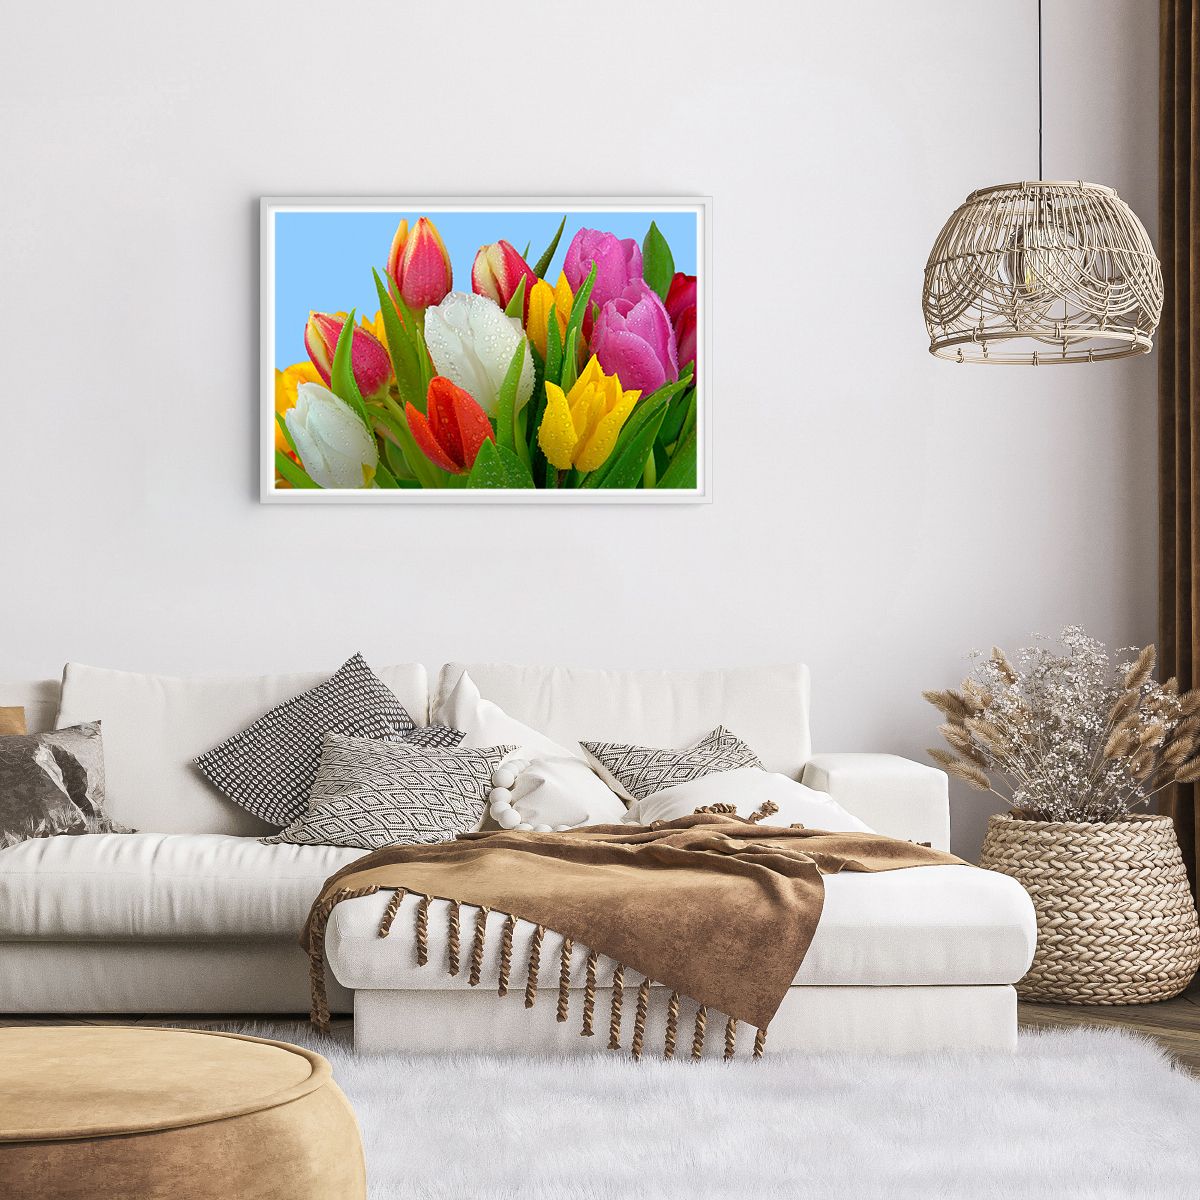 Affiche dans un cadre blanc Tulipes, Affiche dans un cadre blanc Fleurs, Affiche dans un cadre blanc Bouquet De Fleurs, Affiche dans un cadre blanc La Nature, Affiche dans un cadre blanc Fleurs Colorées